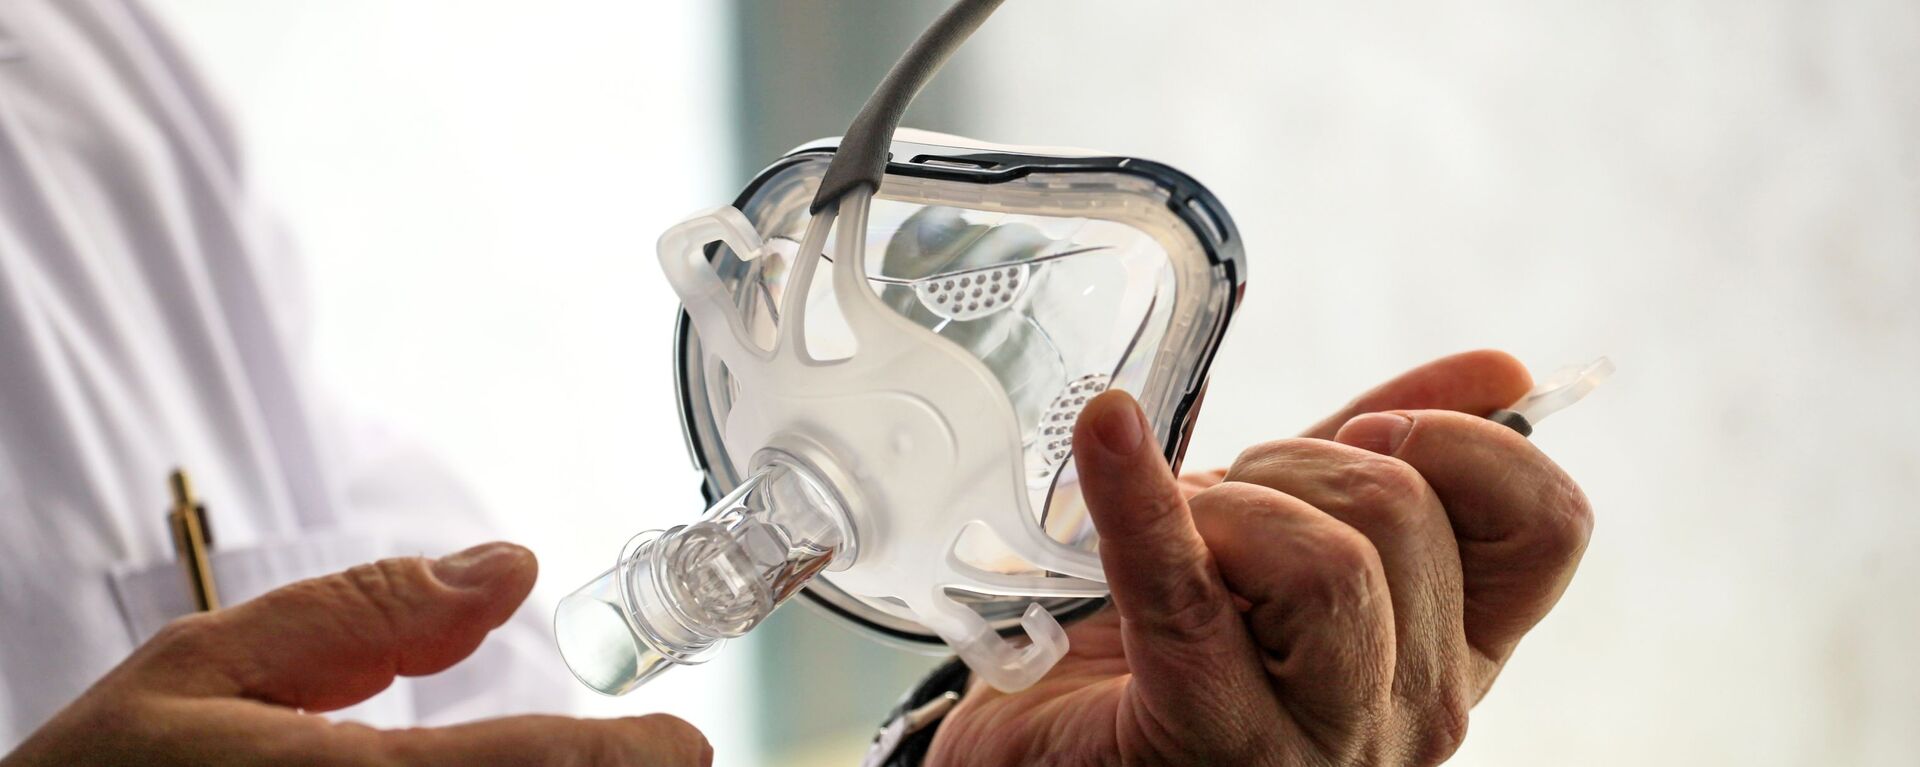 Врач держит в руках маску для искусственной вентиляции легких в палате госпиталя ветеранов войн в Иркутске - Sputnik Армения, 1920, 23.03.2021